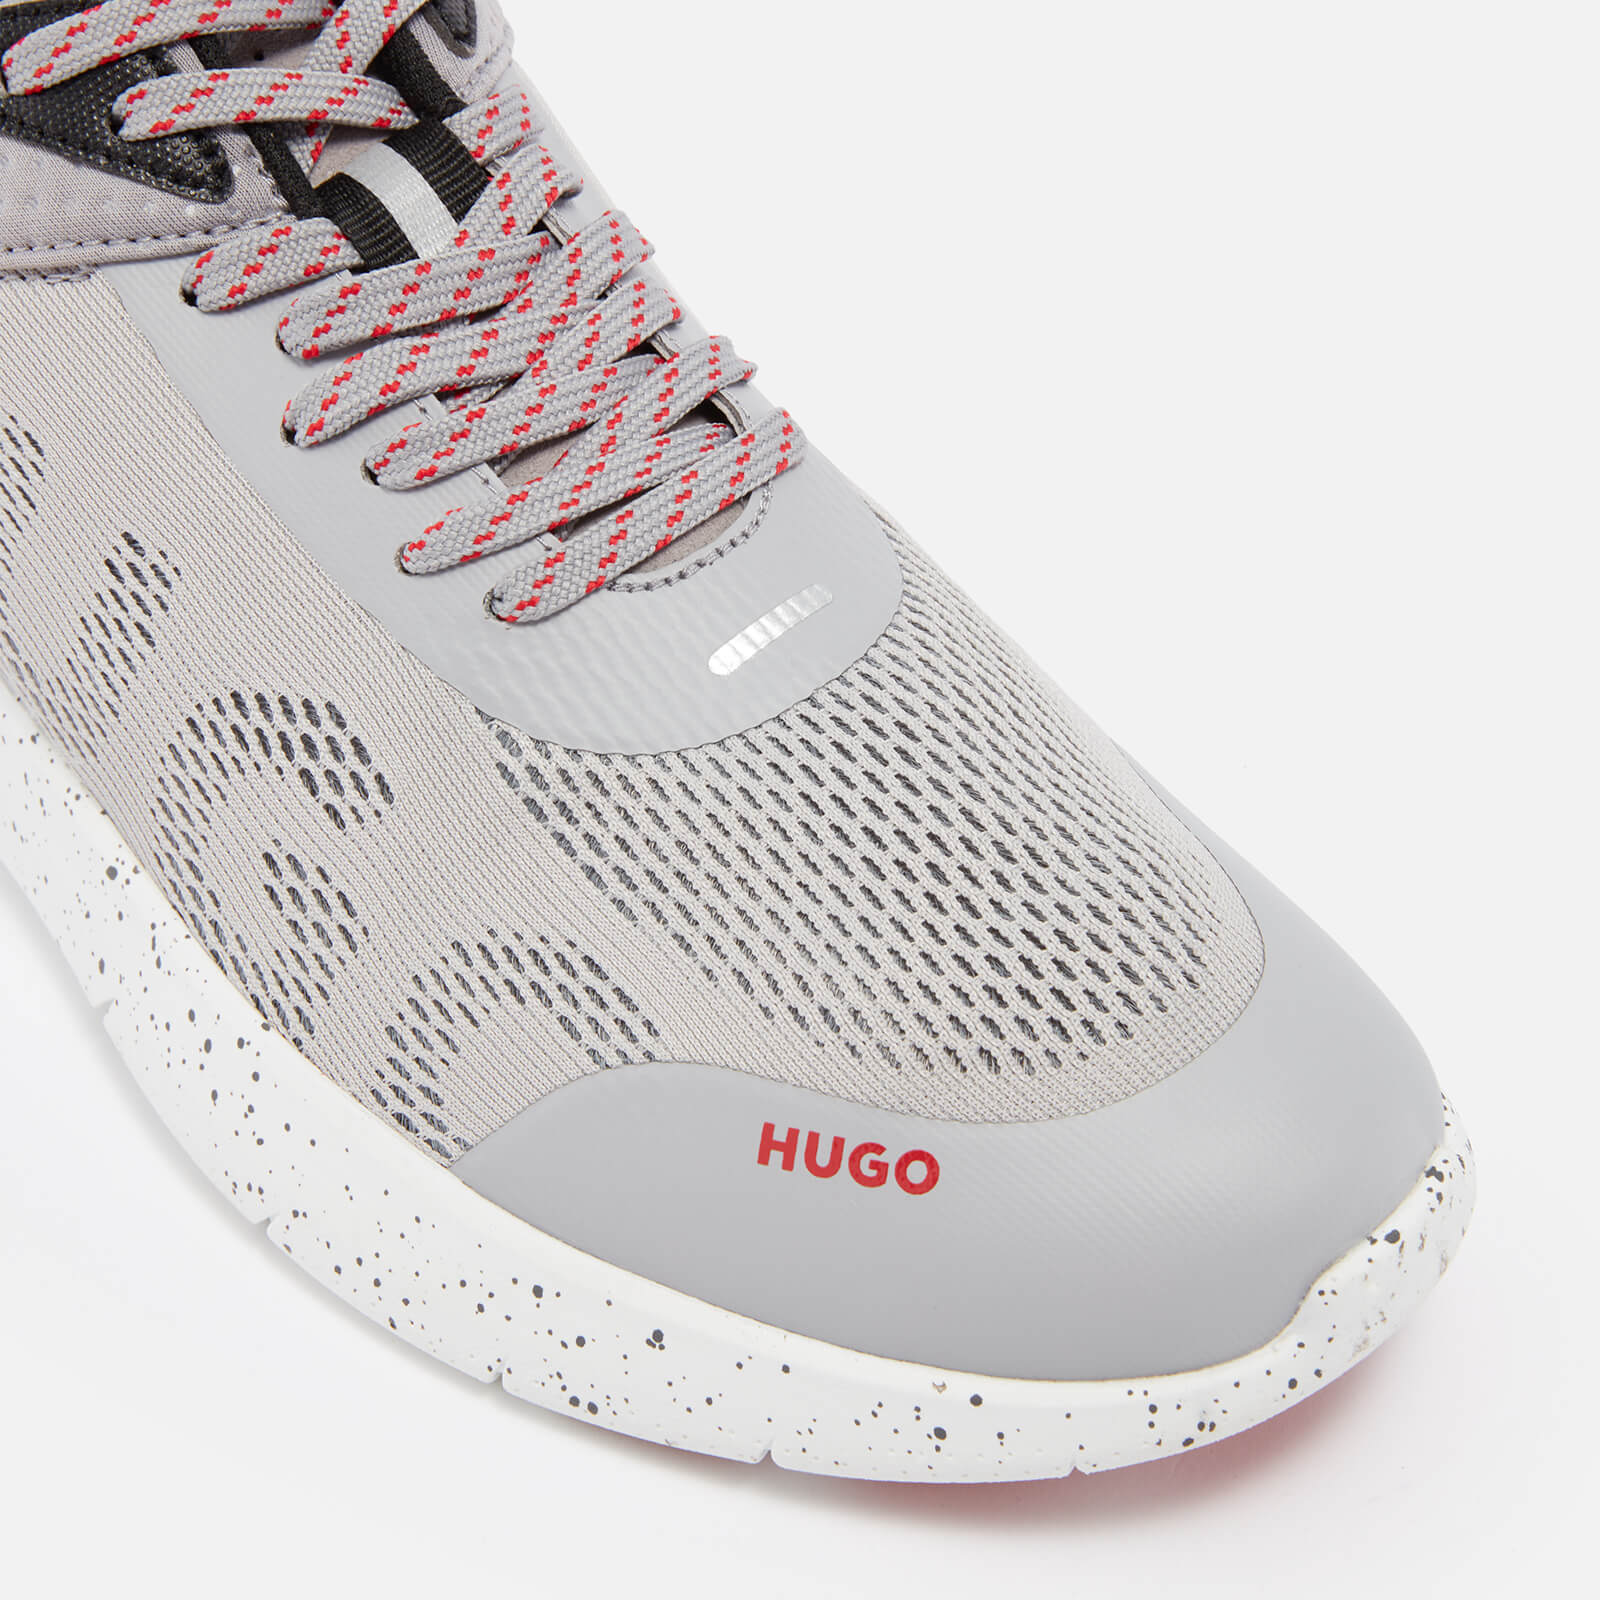 hugo men's wayne mesh running-style trainers - uk 8